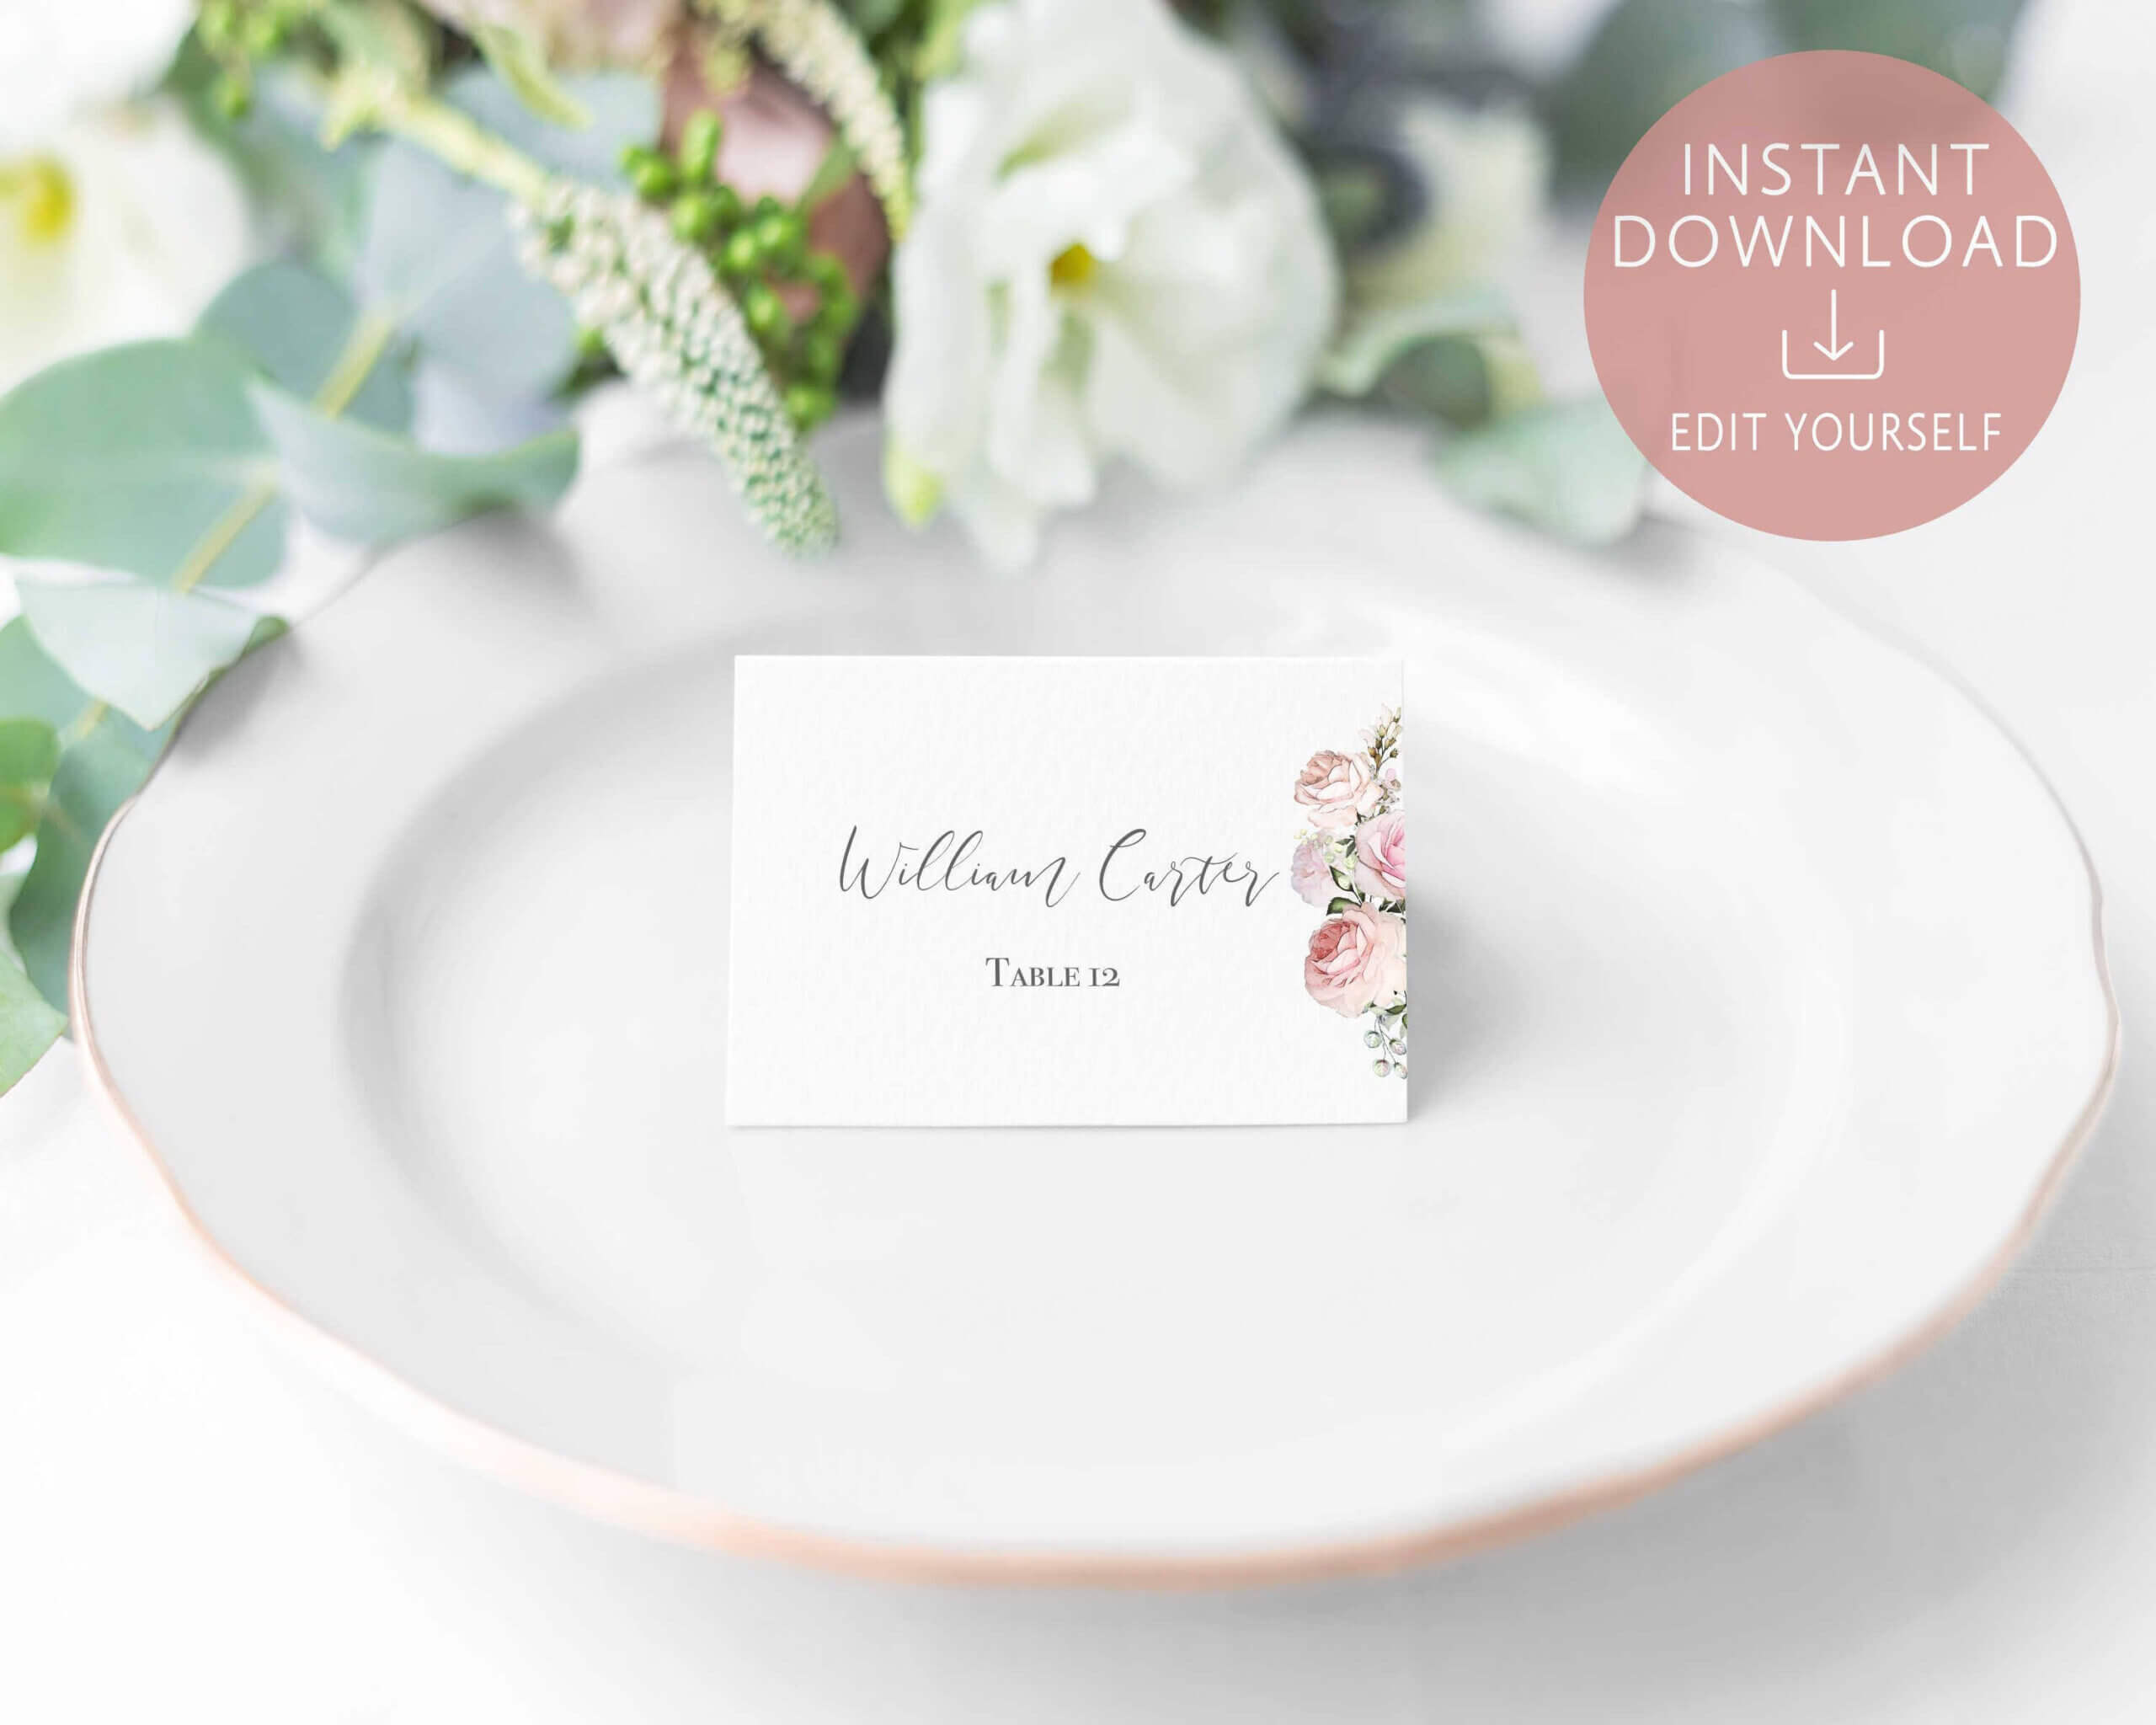 Wedding Place Cards Printable, Editable Name Card Template Within Table Name Card Template